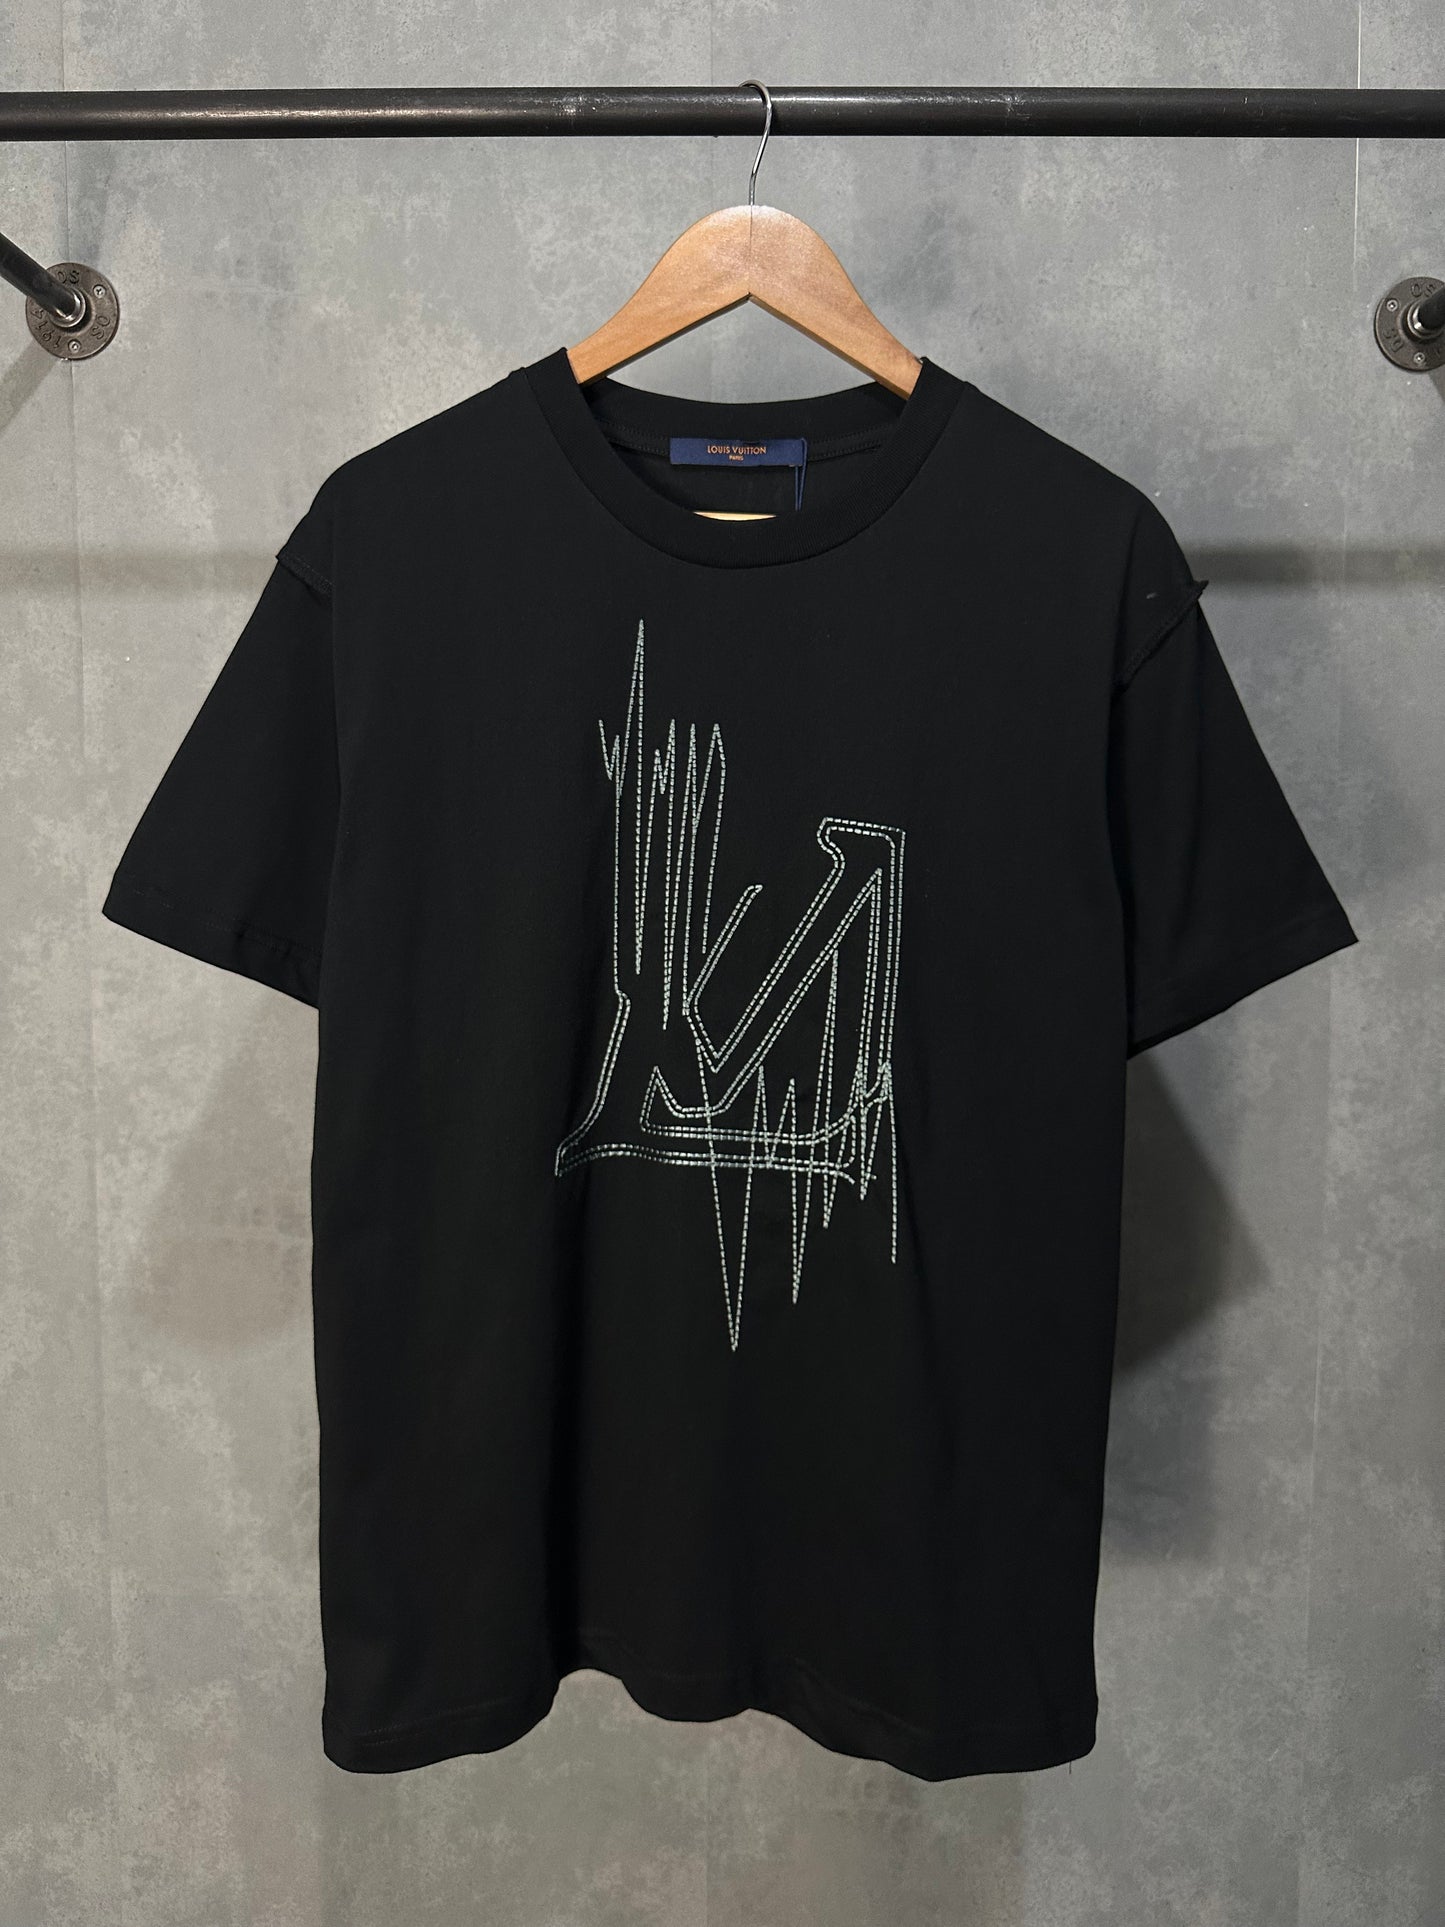 Louis Vuitton Frequency T shirt Men